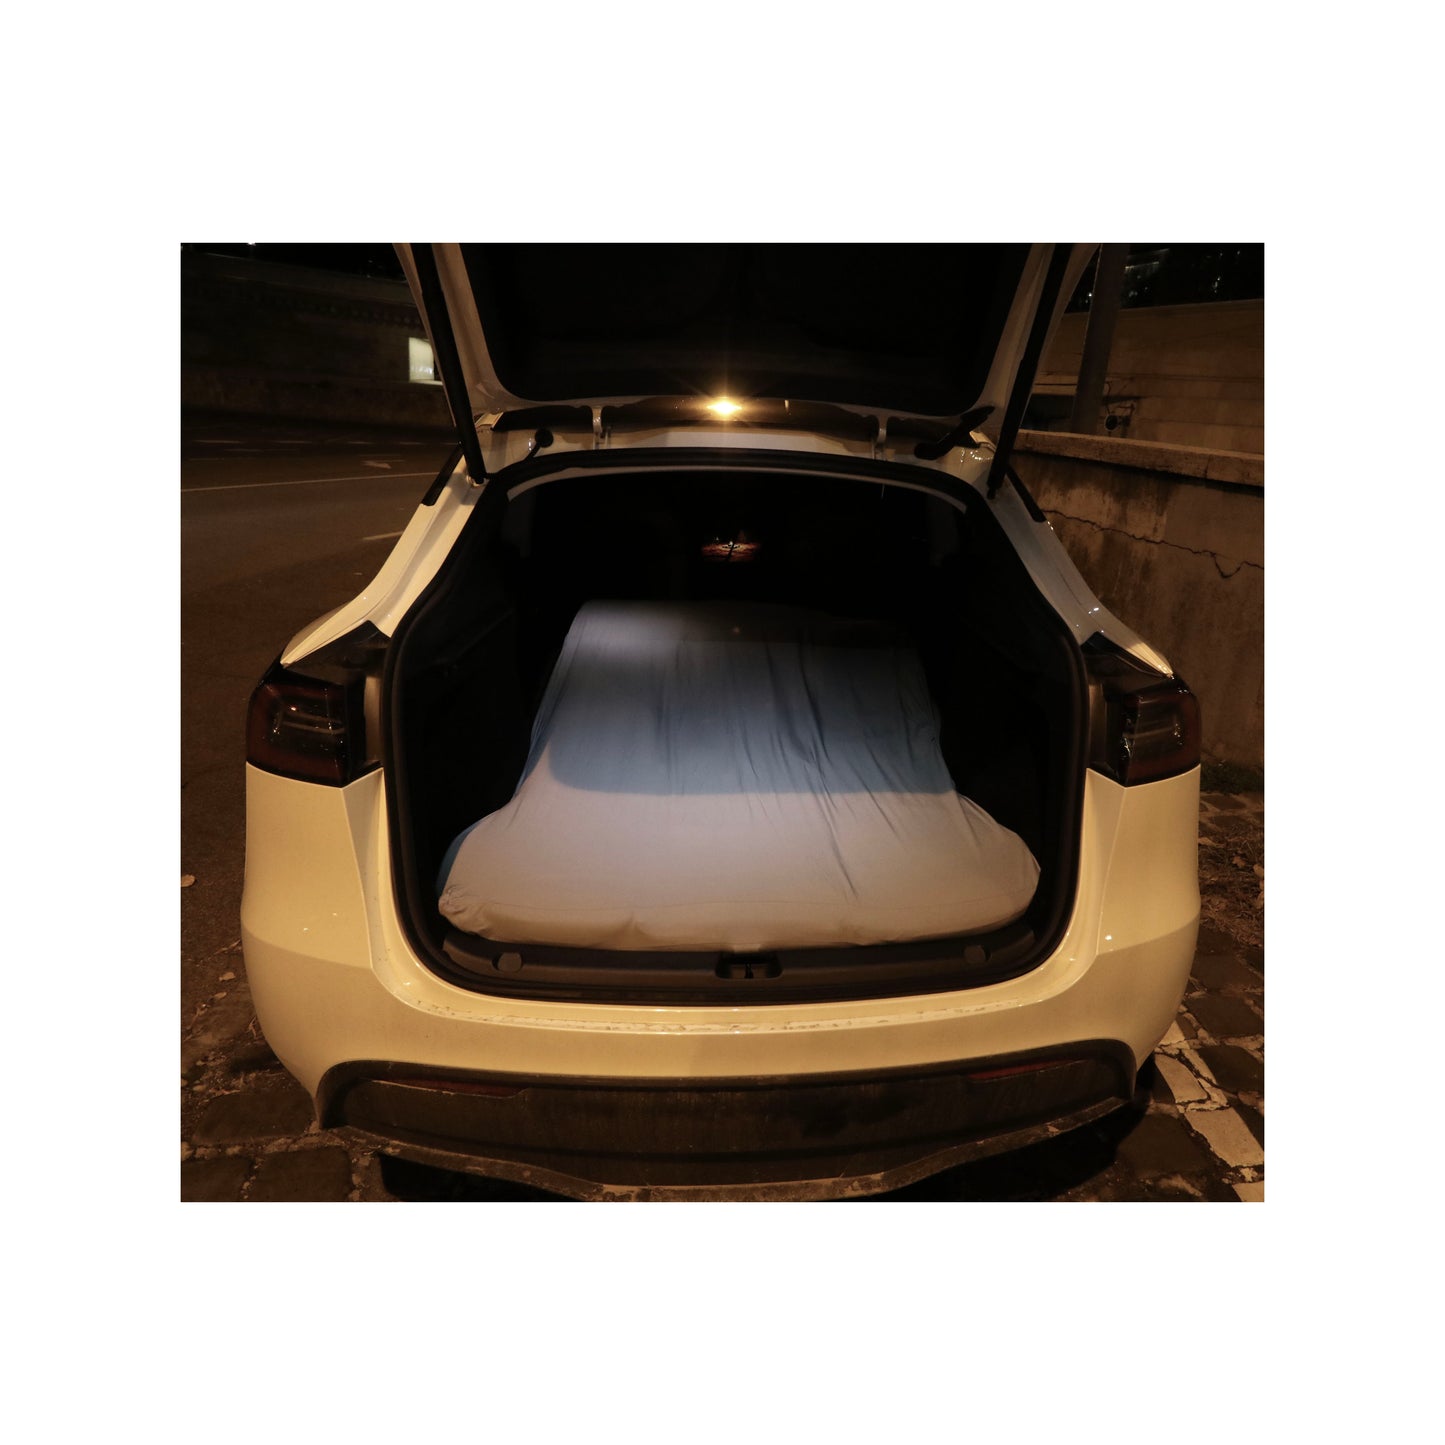 EV-MATS Deluxe CAMP SET pour Tesla Model Y avec matelas Tesla et sac imperméable pour le coffre arrière, drap en satin, couette, 2 oreillers avec housses, 11 nuances et 2 sacs imperméables pour le coffre avant de la Model Y